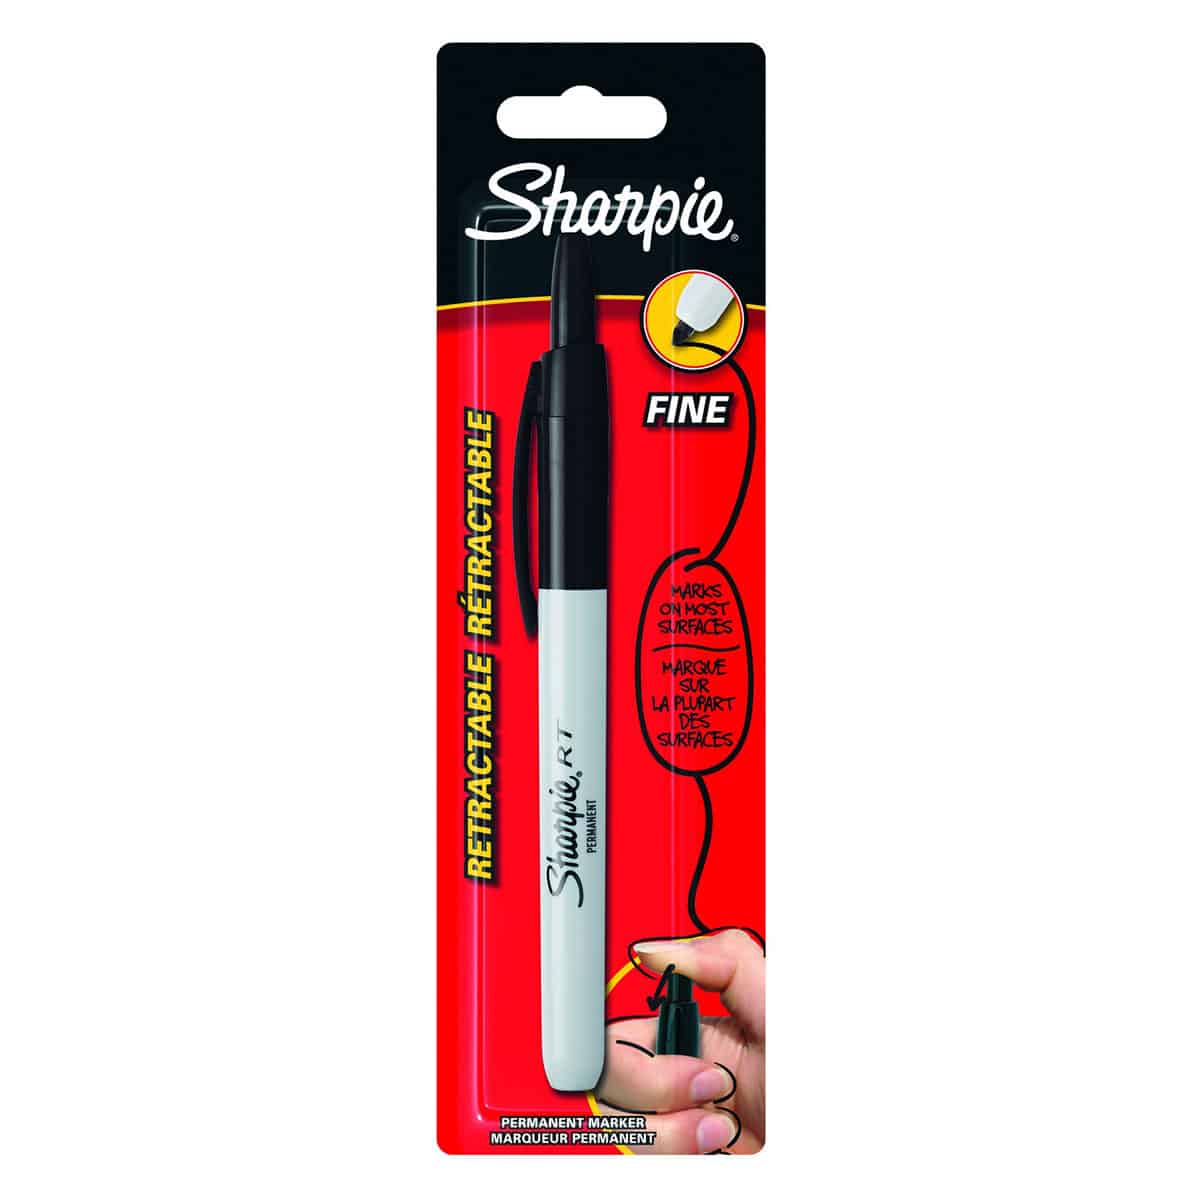 Sharpie Permanent Classic Fine Marker kopen bij Suitup Shop